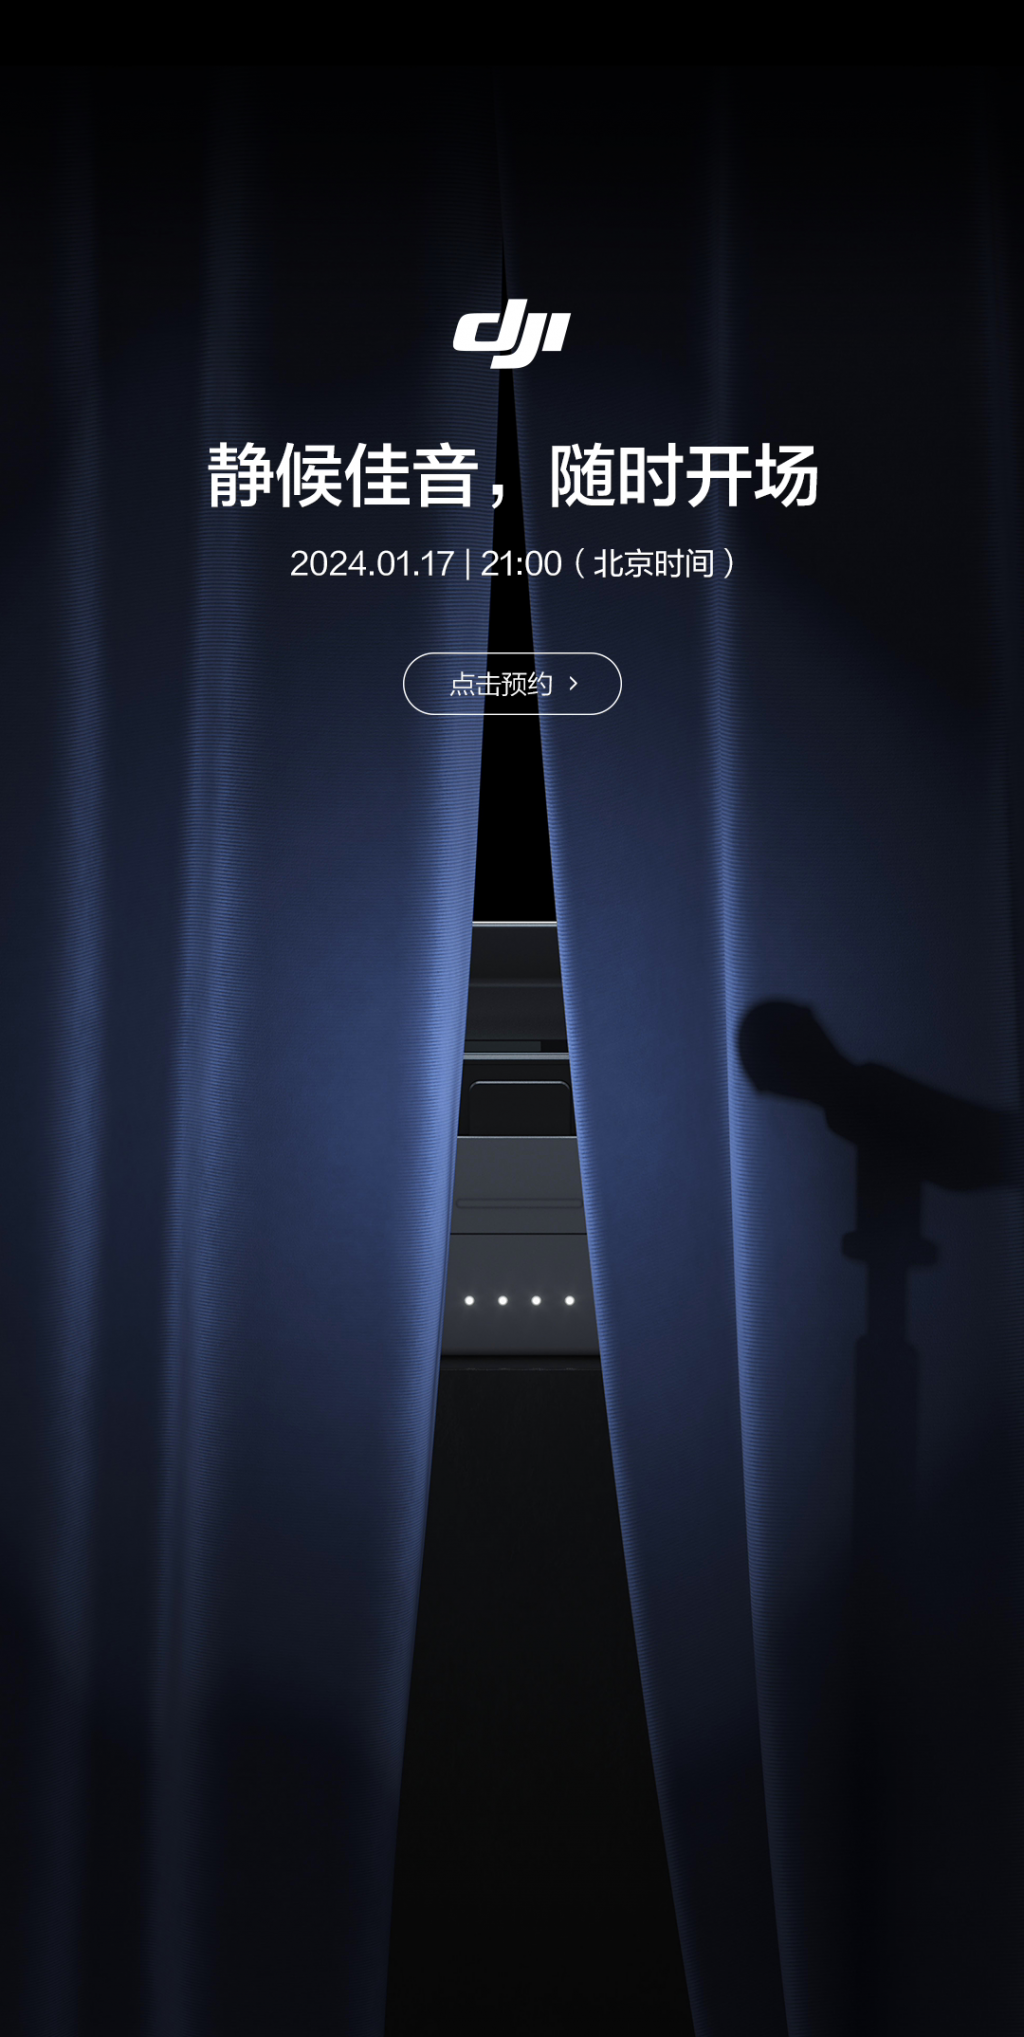 大疆官宣 1 月 17 日发布DJI MIC 2 麦克风